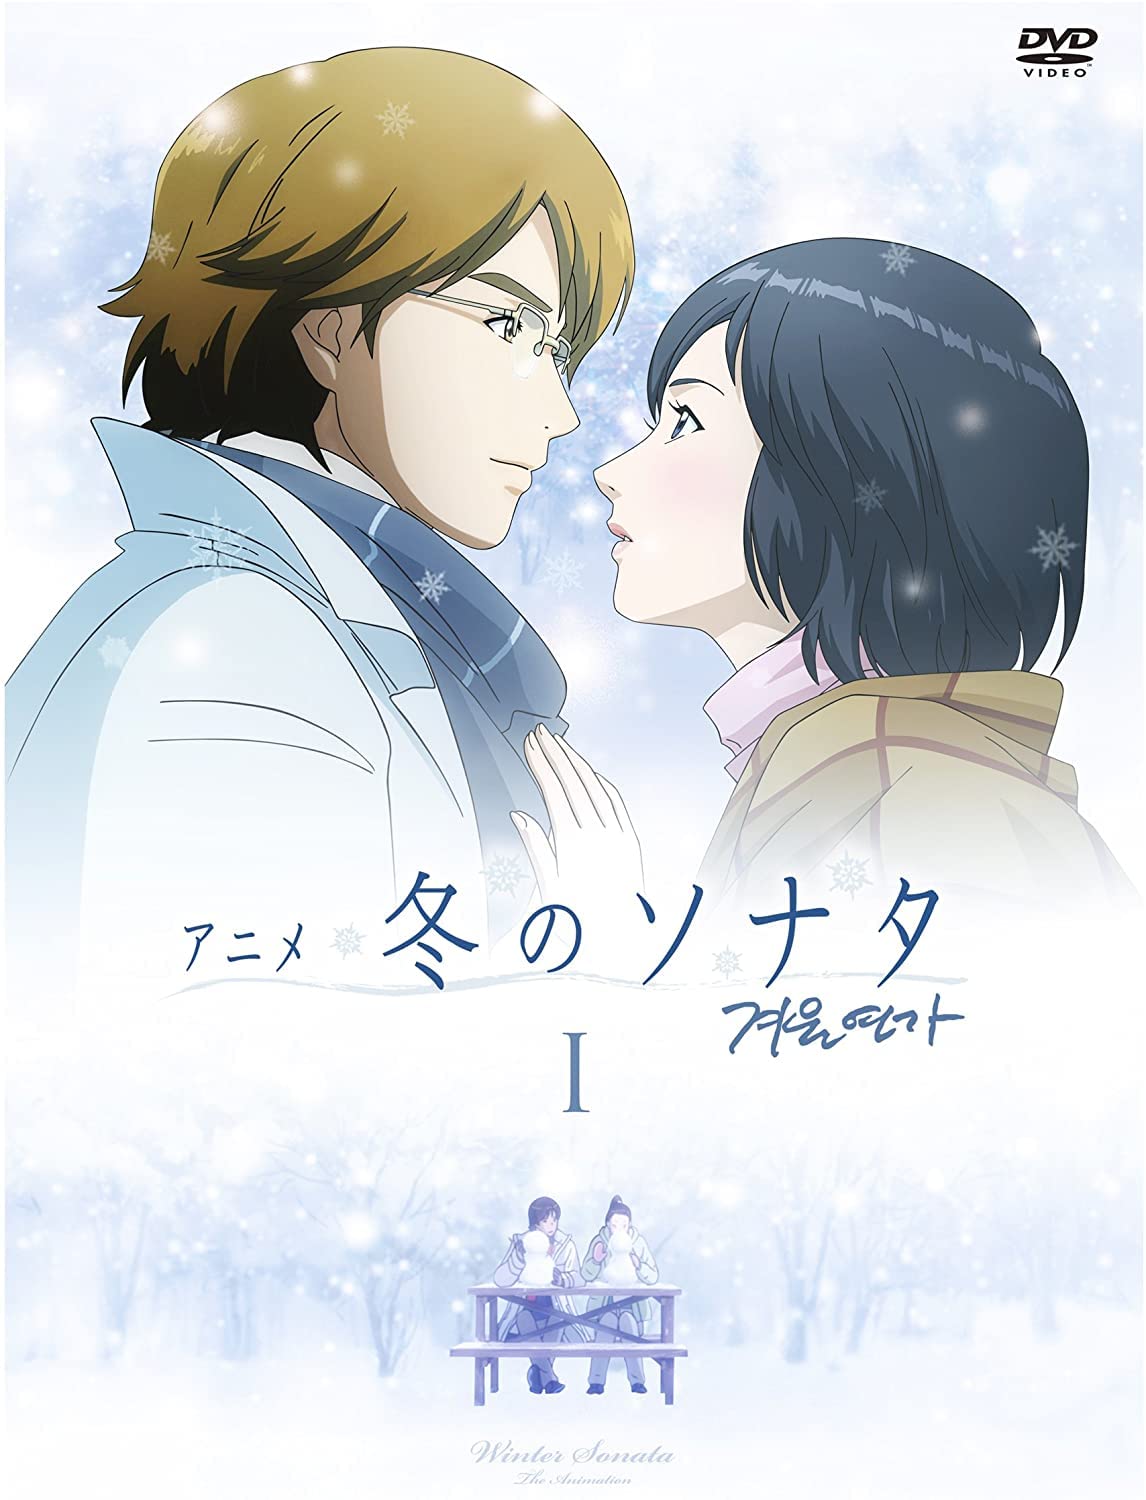 冬季恋歌-anime02.jpg